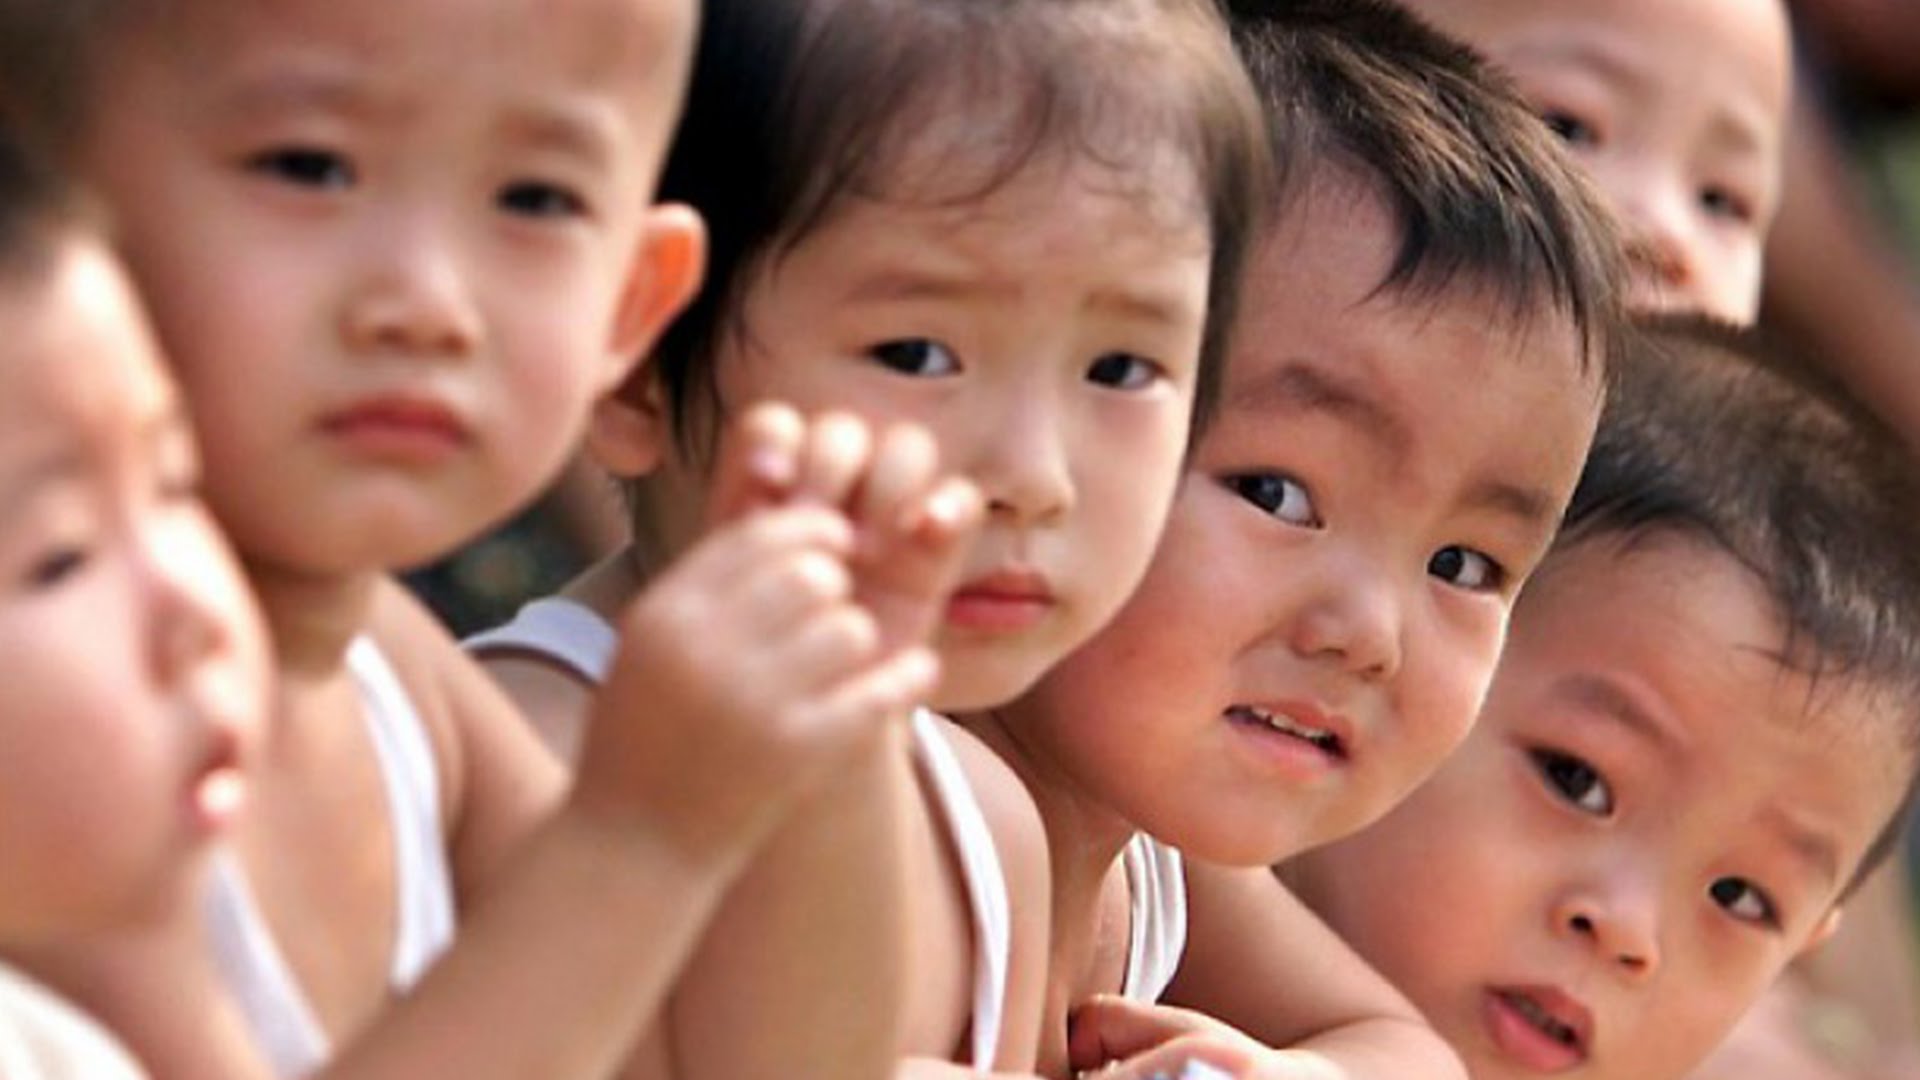 Китайцев больше не будут штрафовать за рождение второго ребенка, напротив будут выплачивать премию